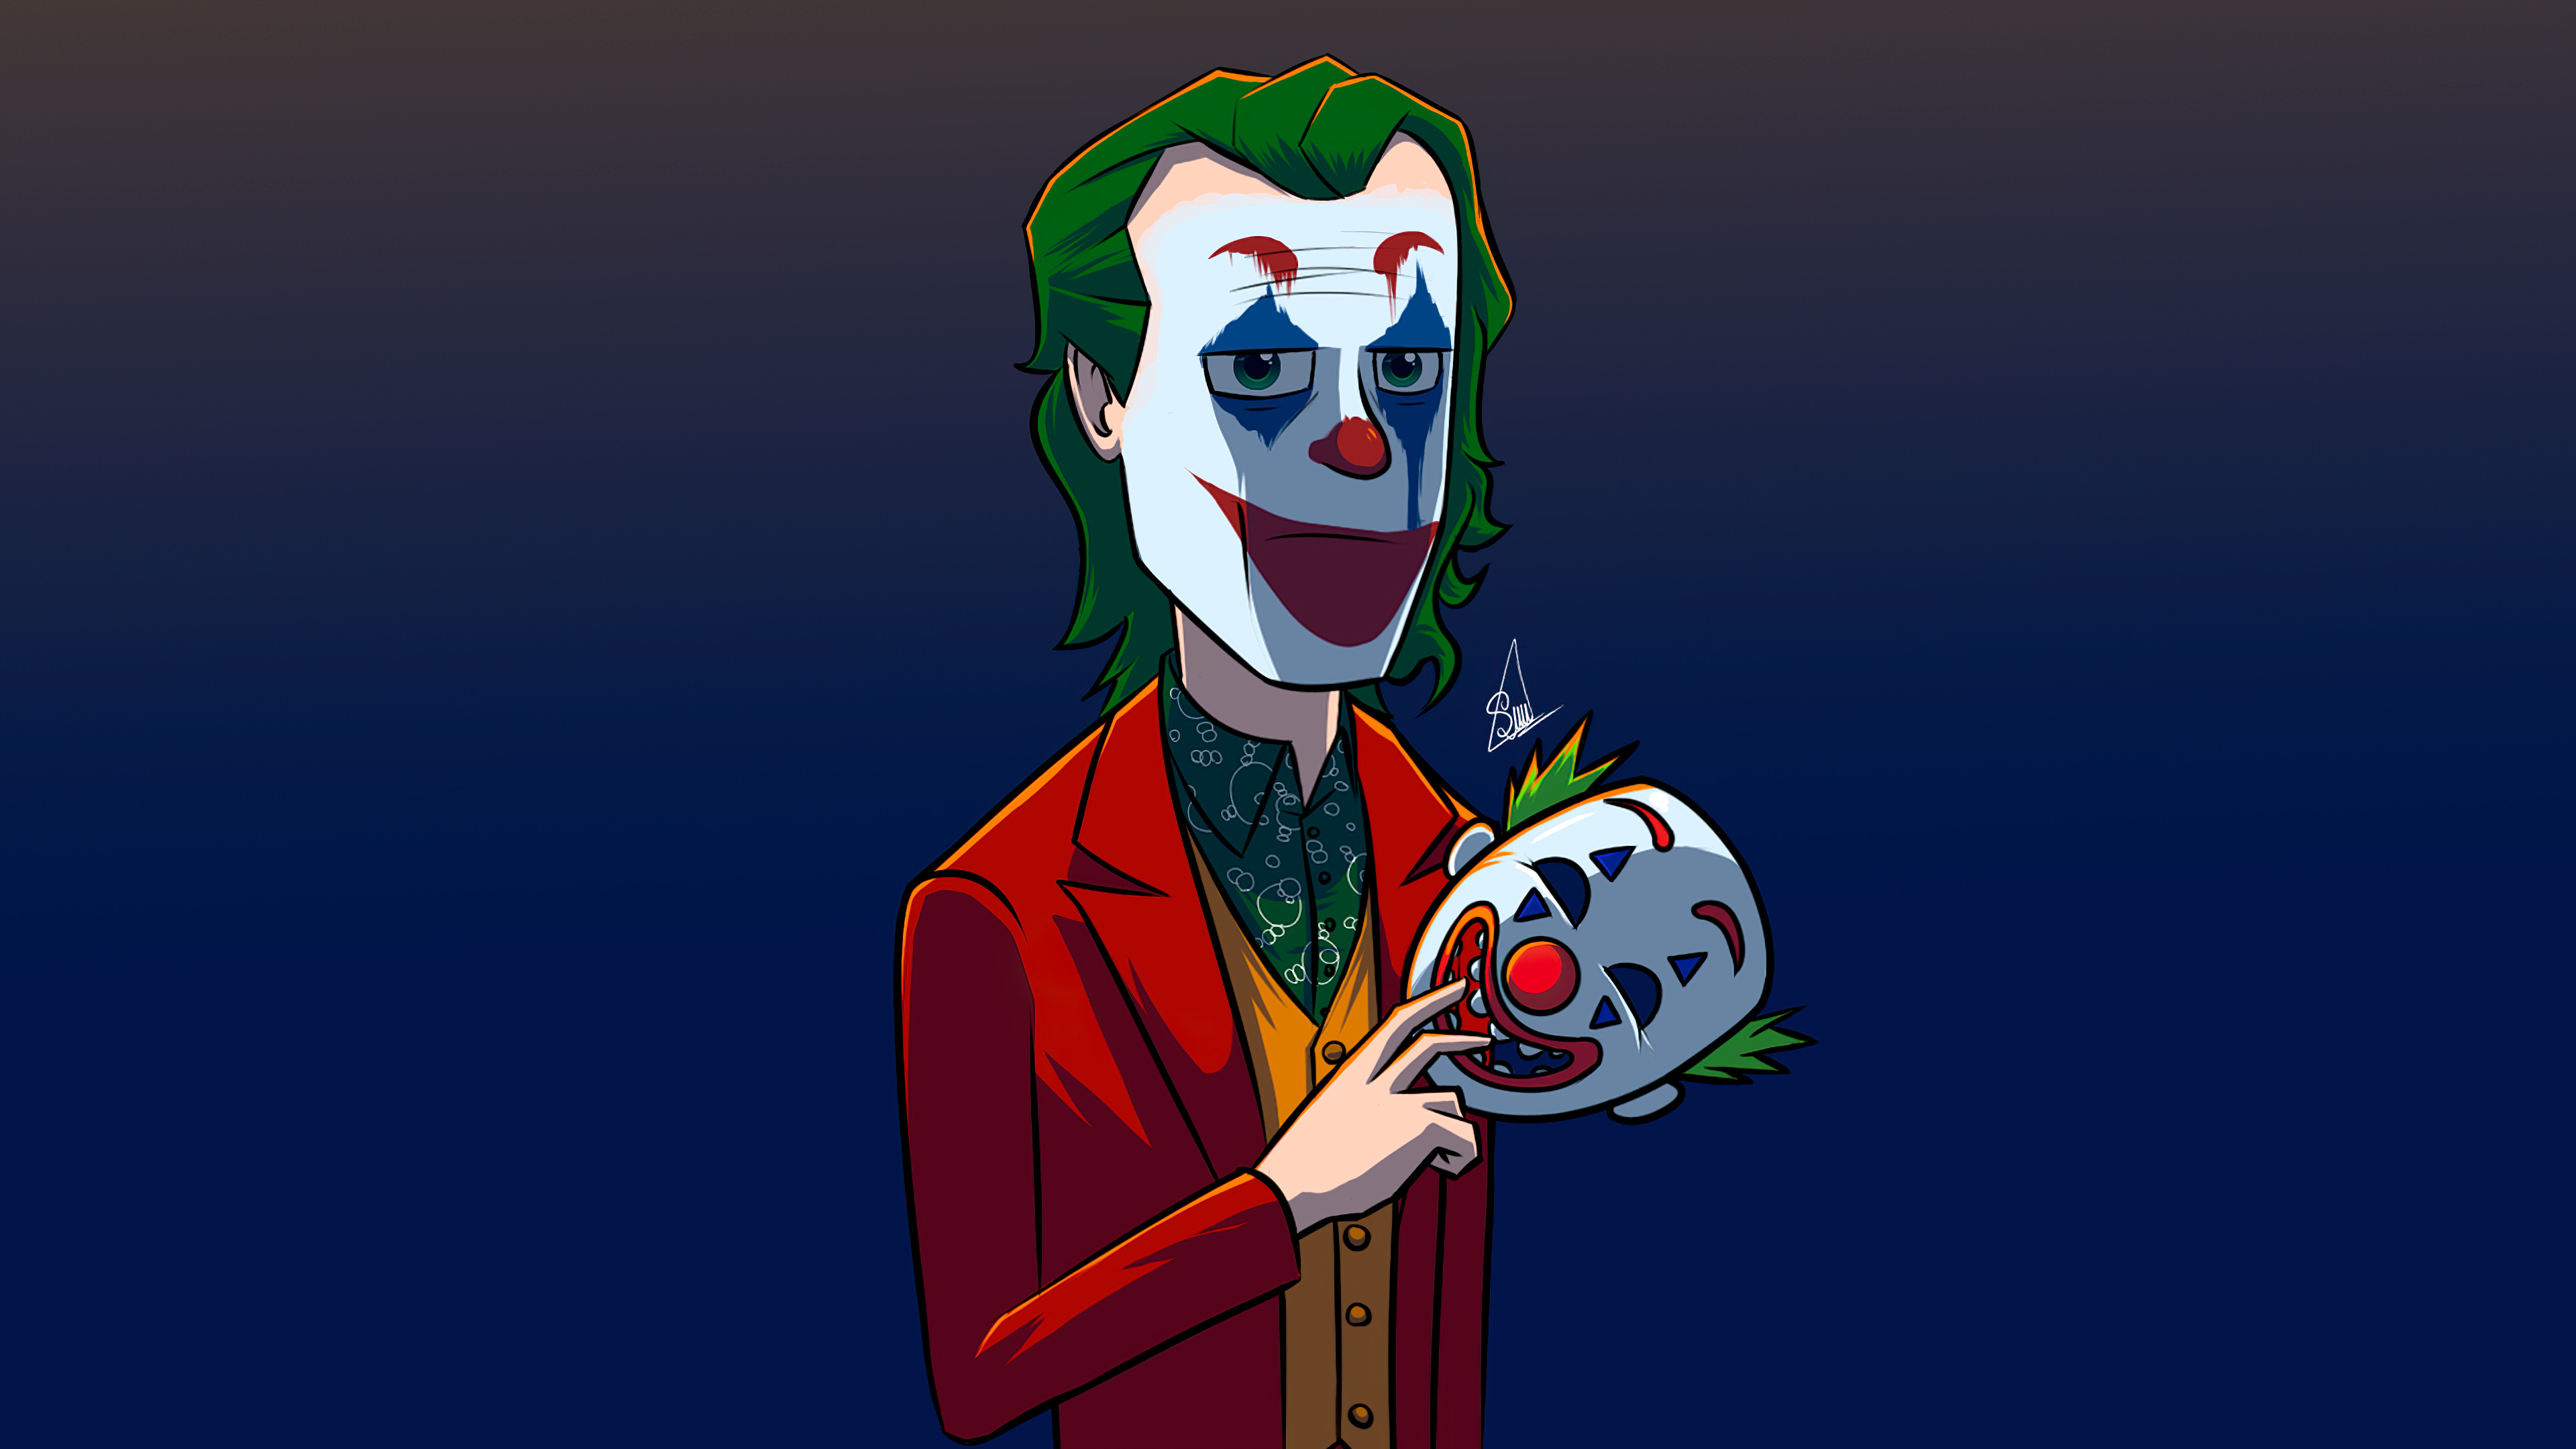 Joker 4k Ultra HD Wallpaper by MrSpikeArt